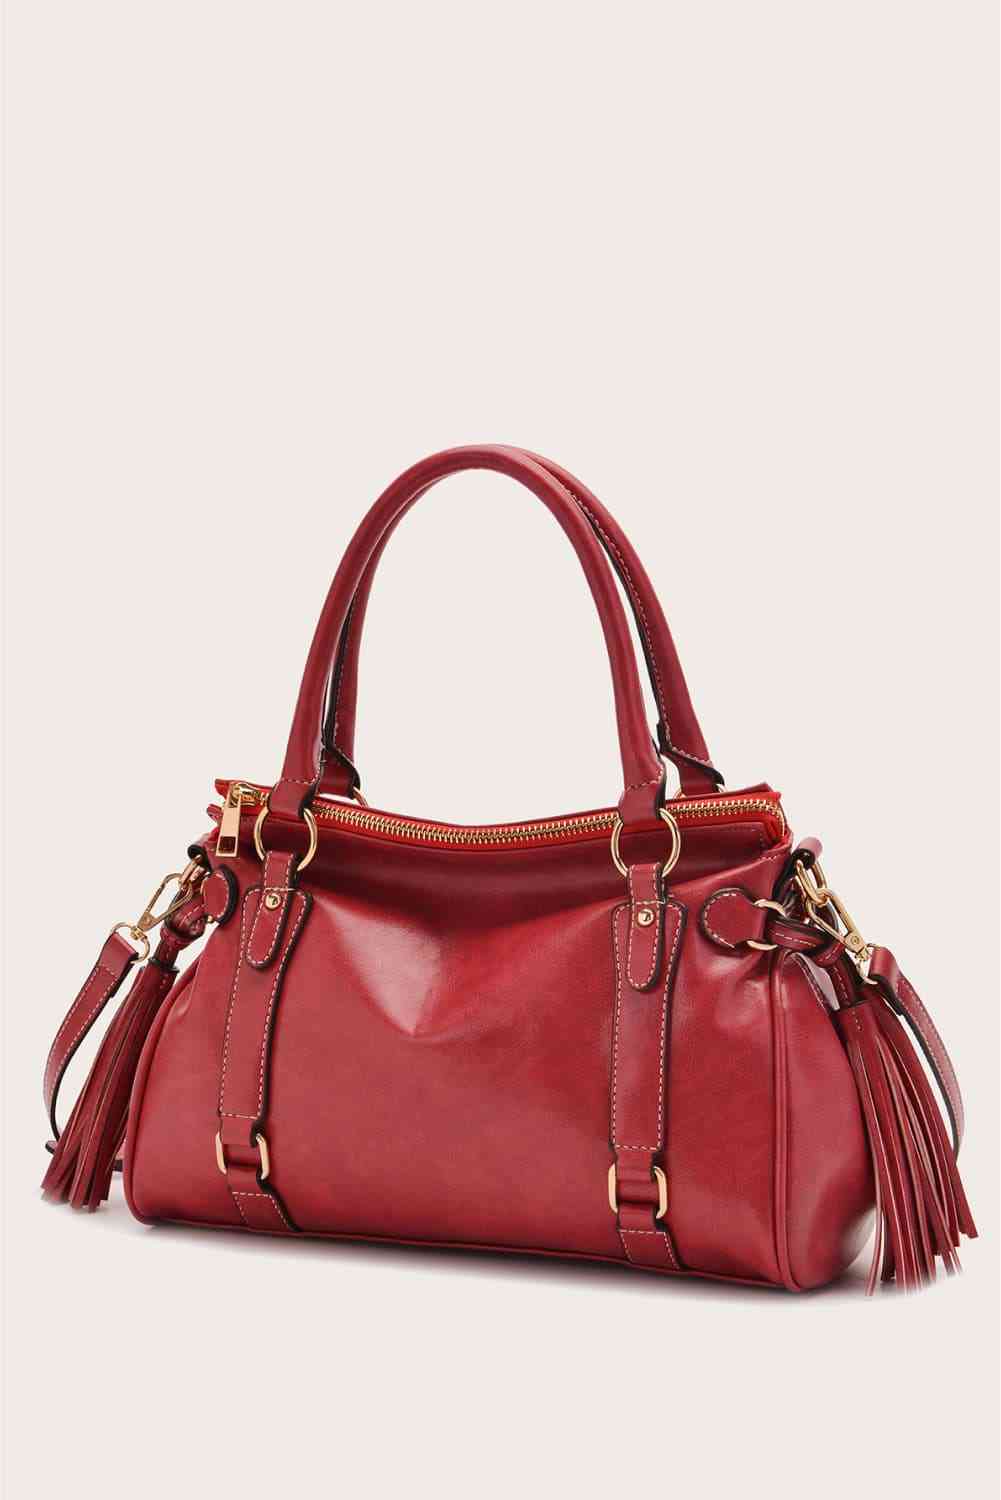 TEEK - However Handbag BAG TEEK Trend Red  